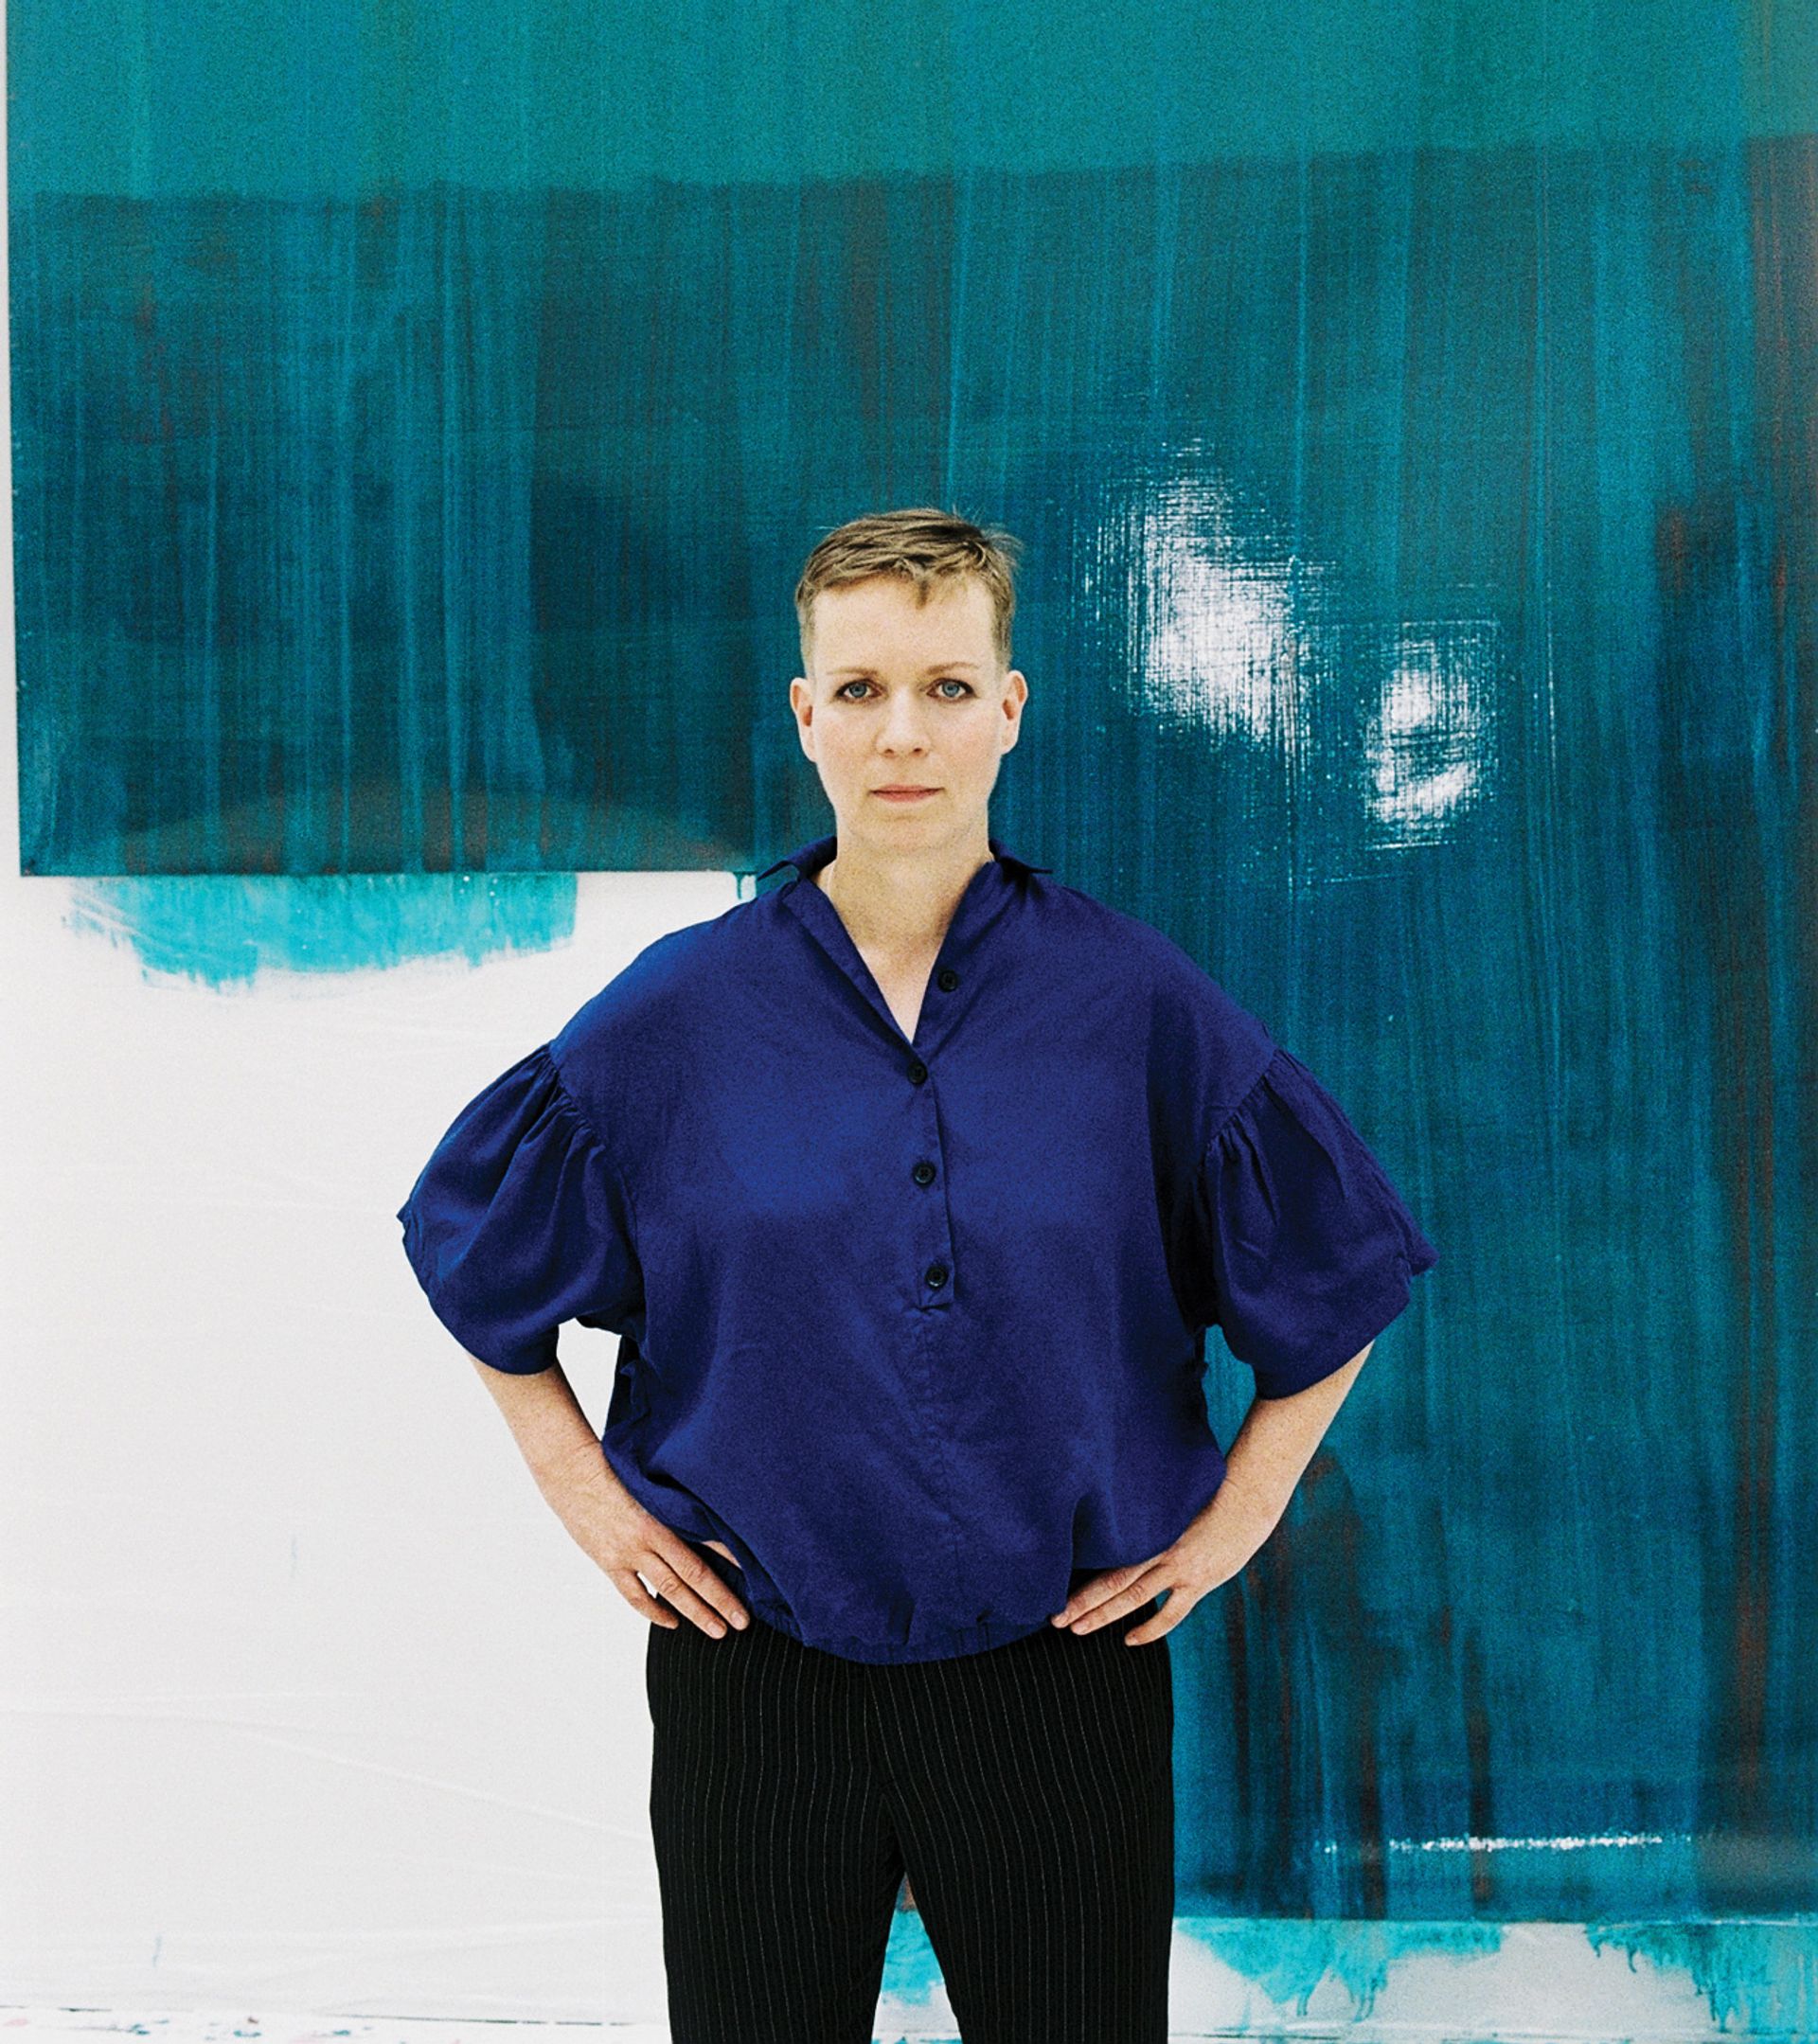 Katharina Grosse 2015, VG Bild-Kunst Bonn 2015; photograph: Andrea Stappert, courtesy of the artist